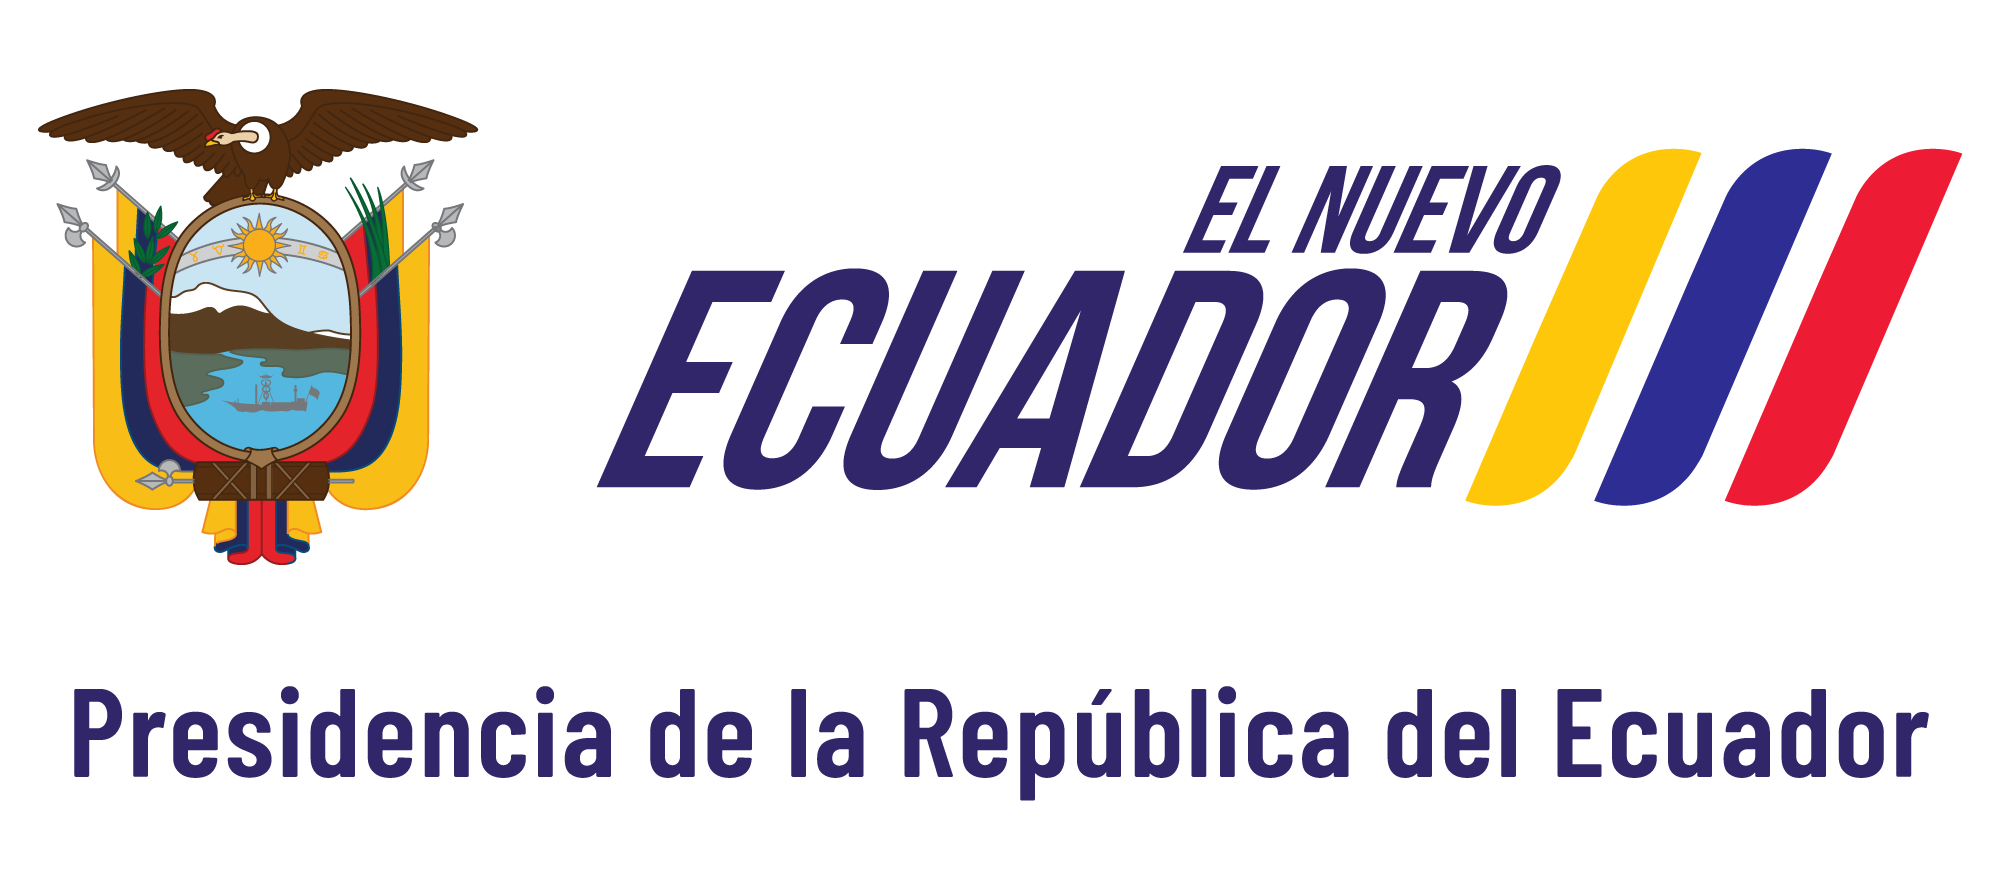 logo presidencia ecuador